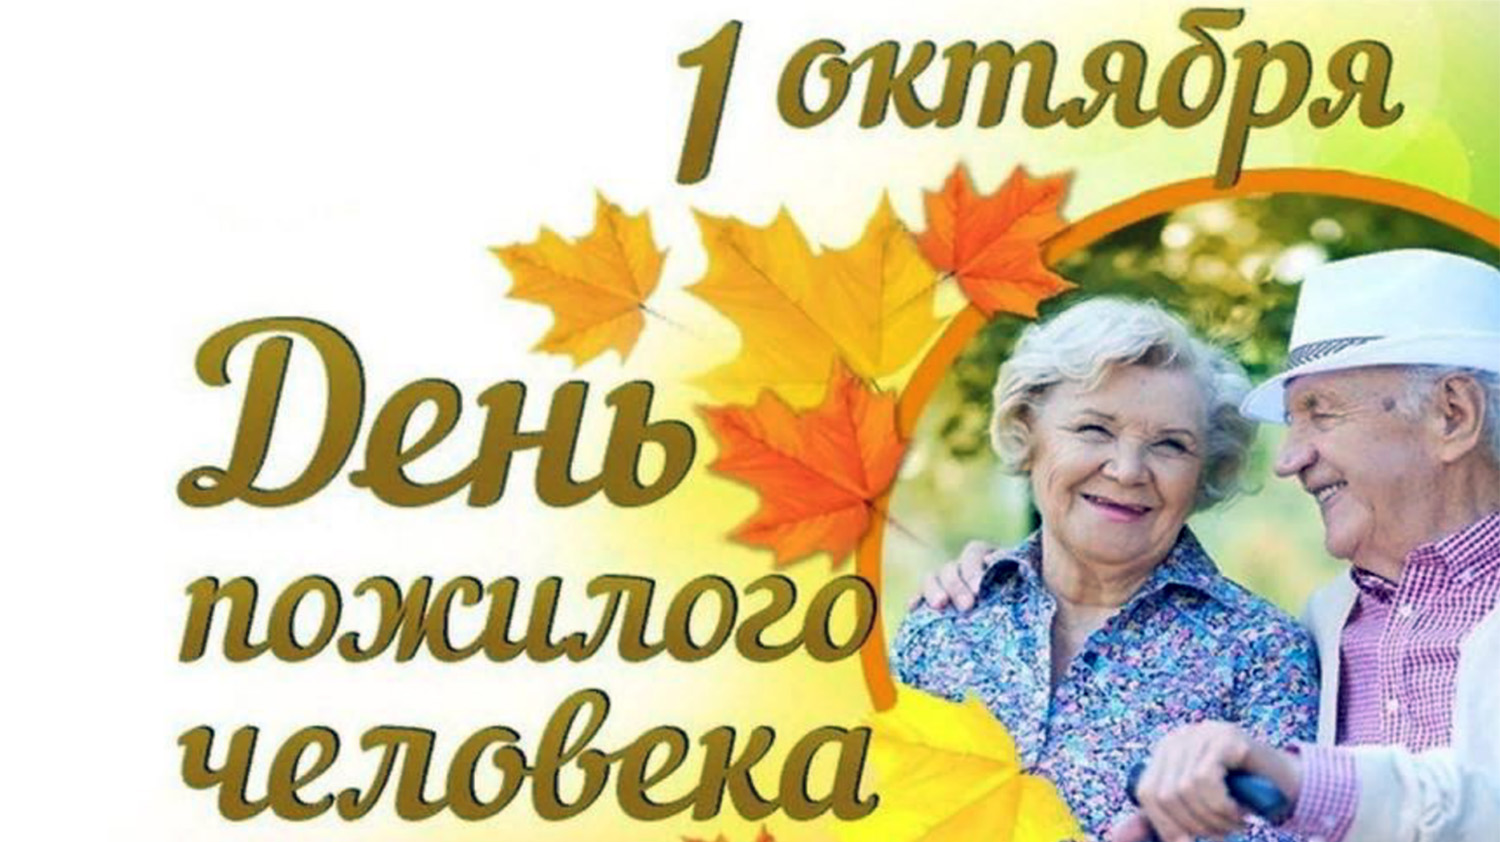 1 октября - День пожилого человека